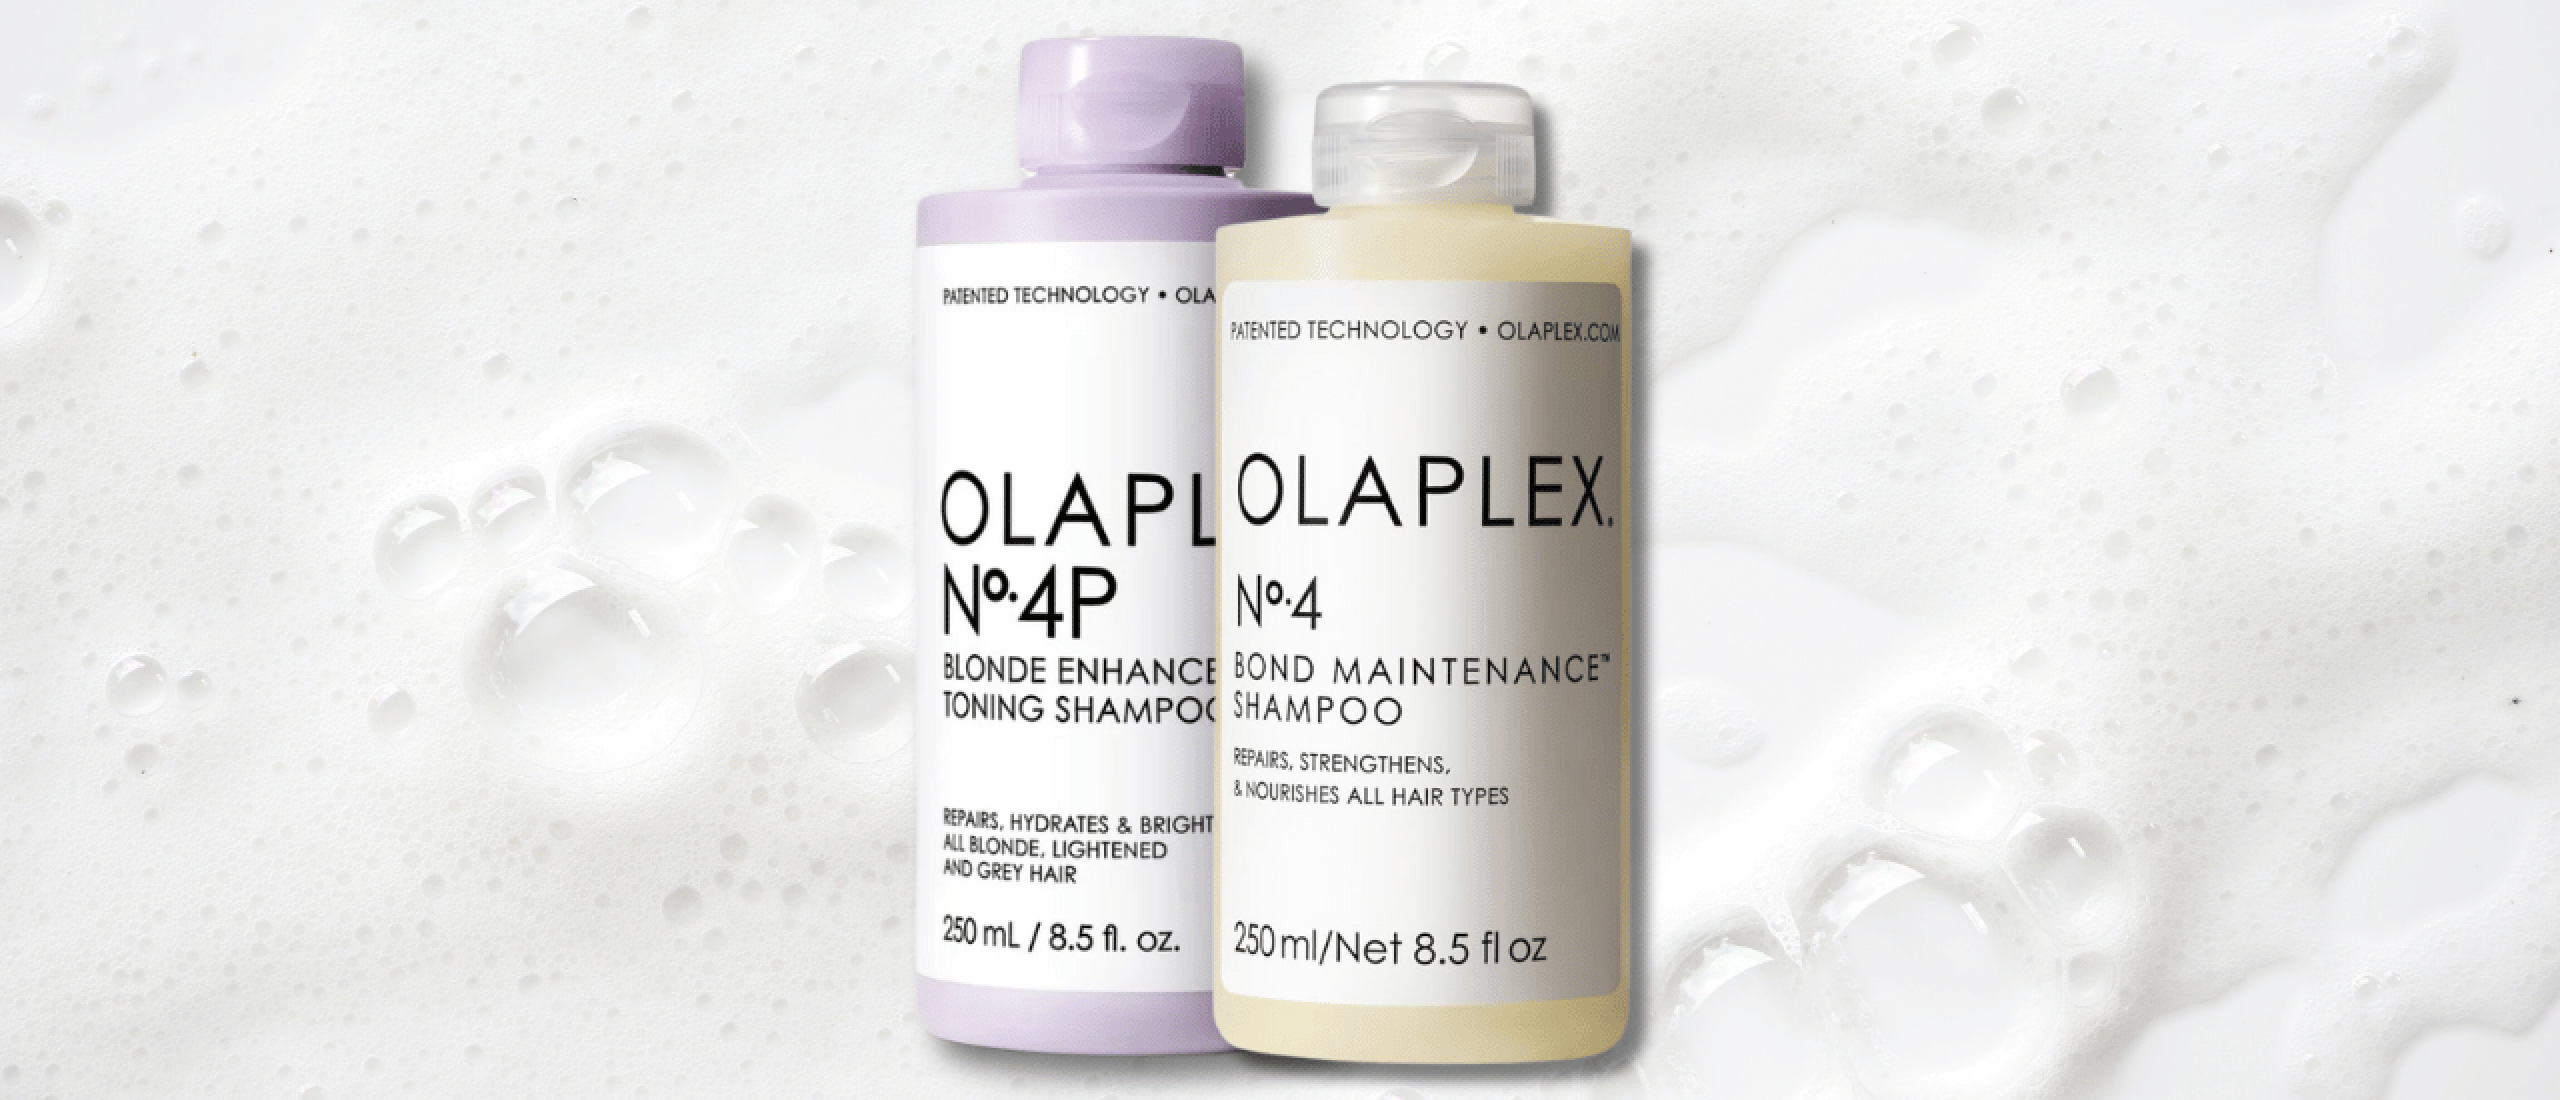 Olaplex shampoo review